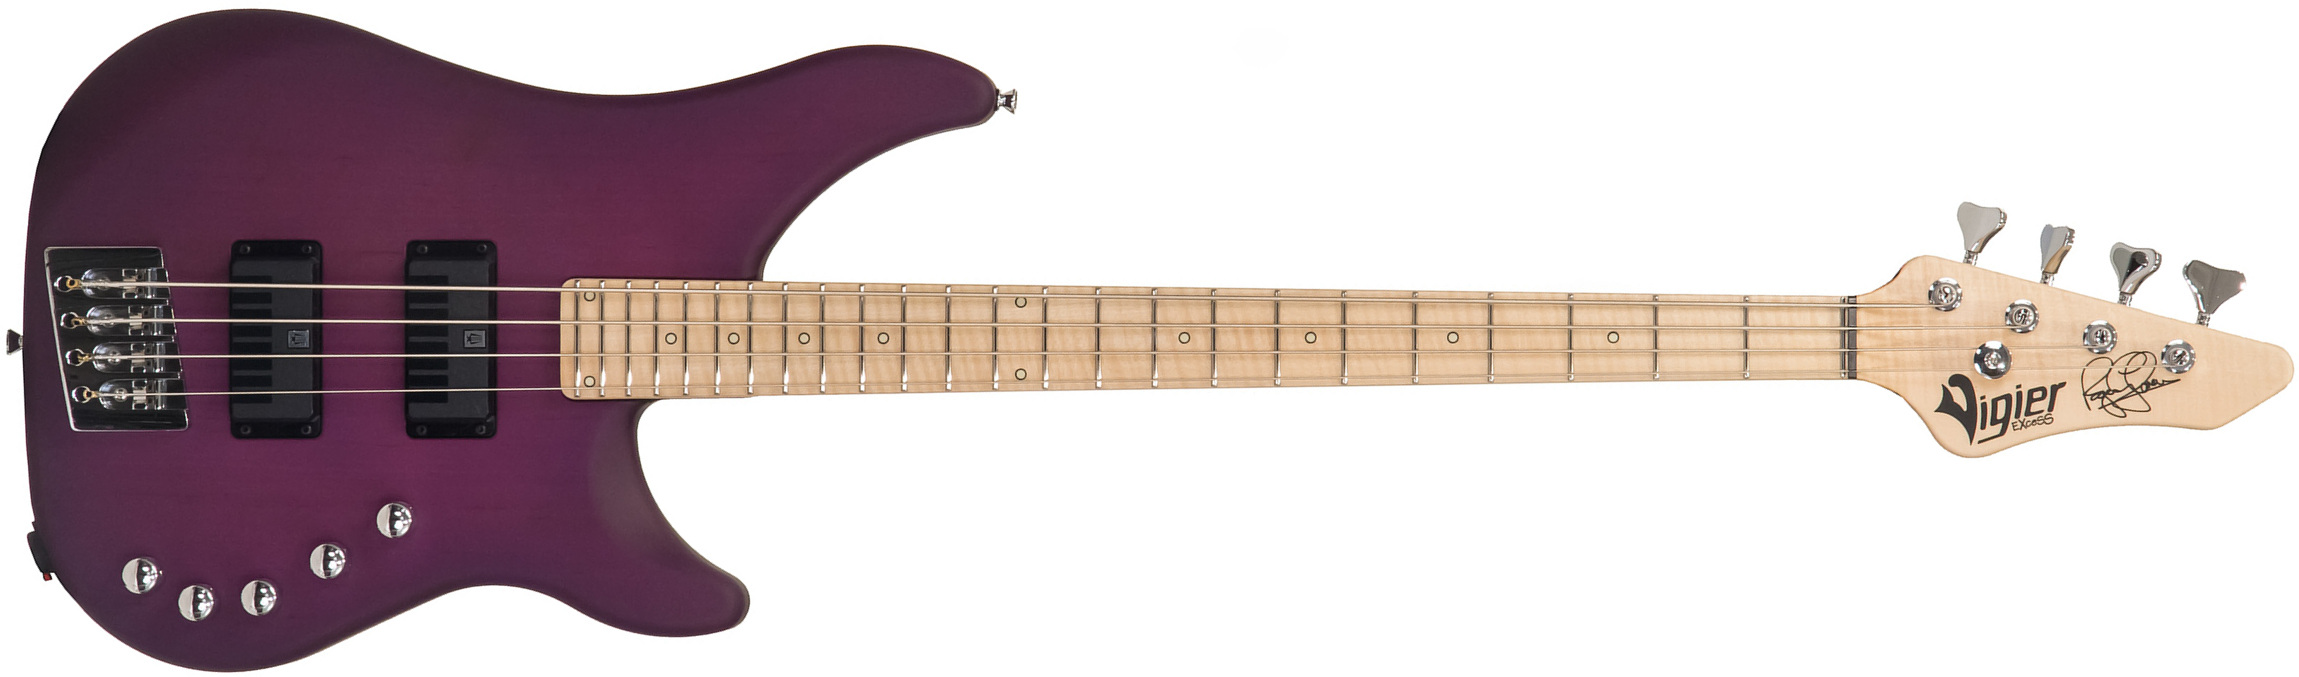 Vigier Roger Glover Excess Original Signature Active Rw - Clear Purple - Basse Électrique Solid Body - Main picture